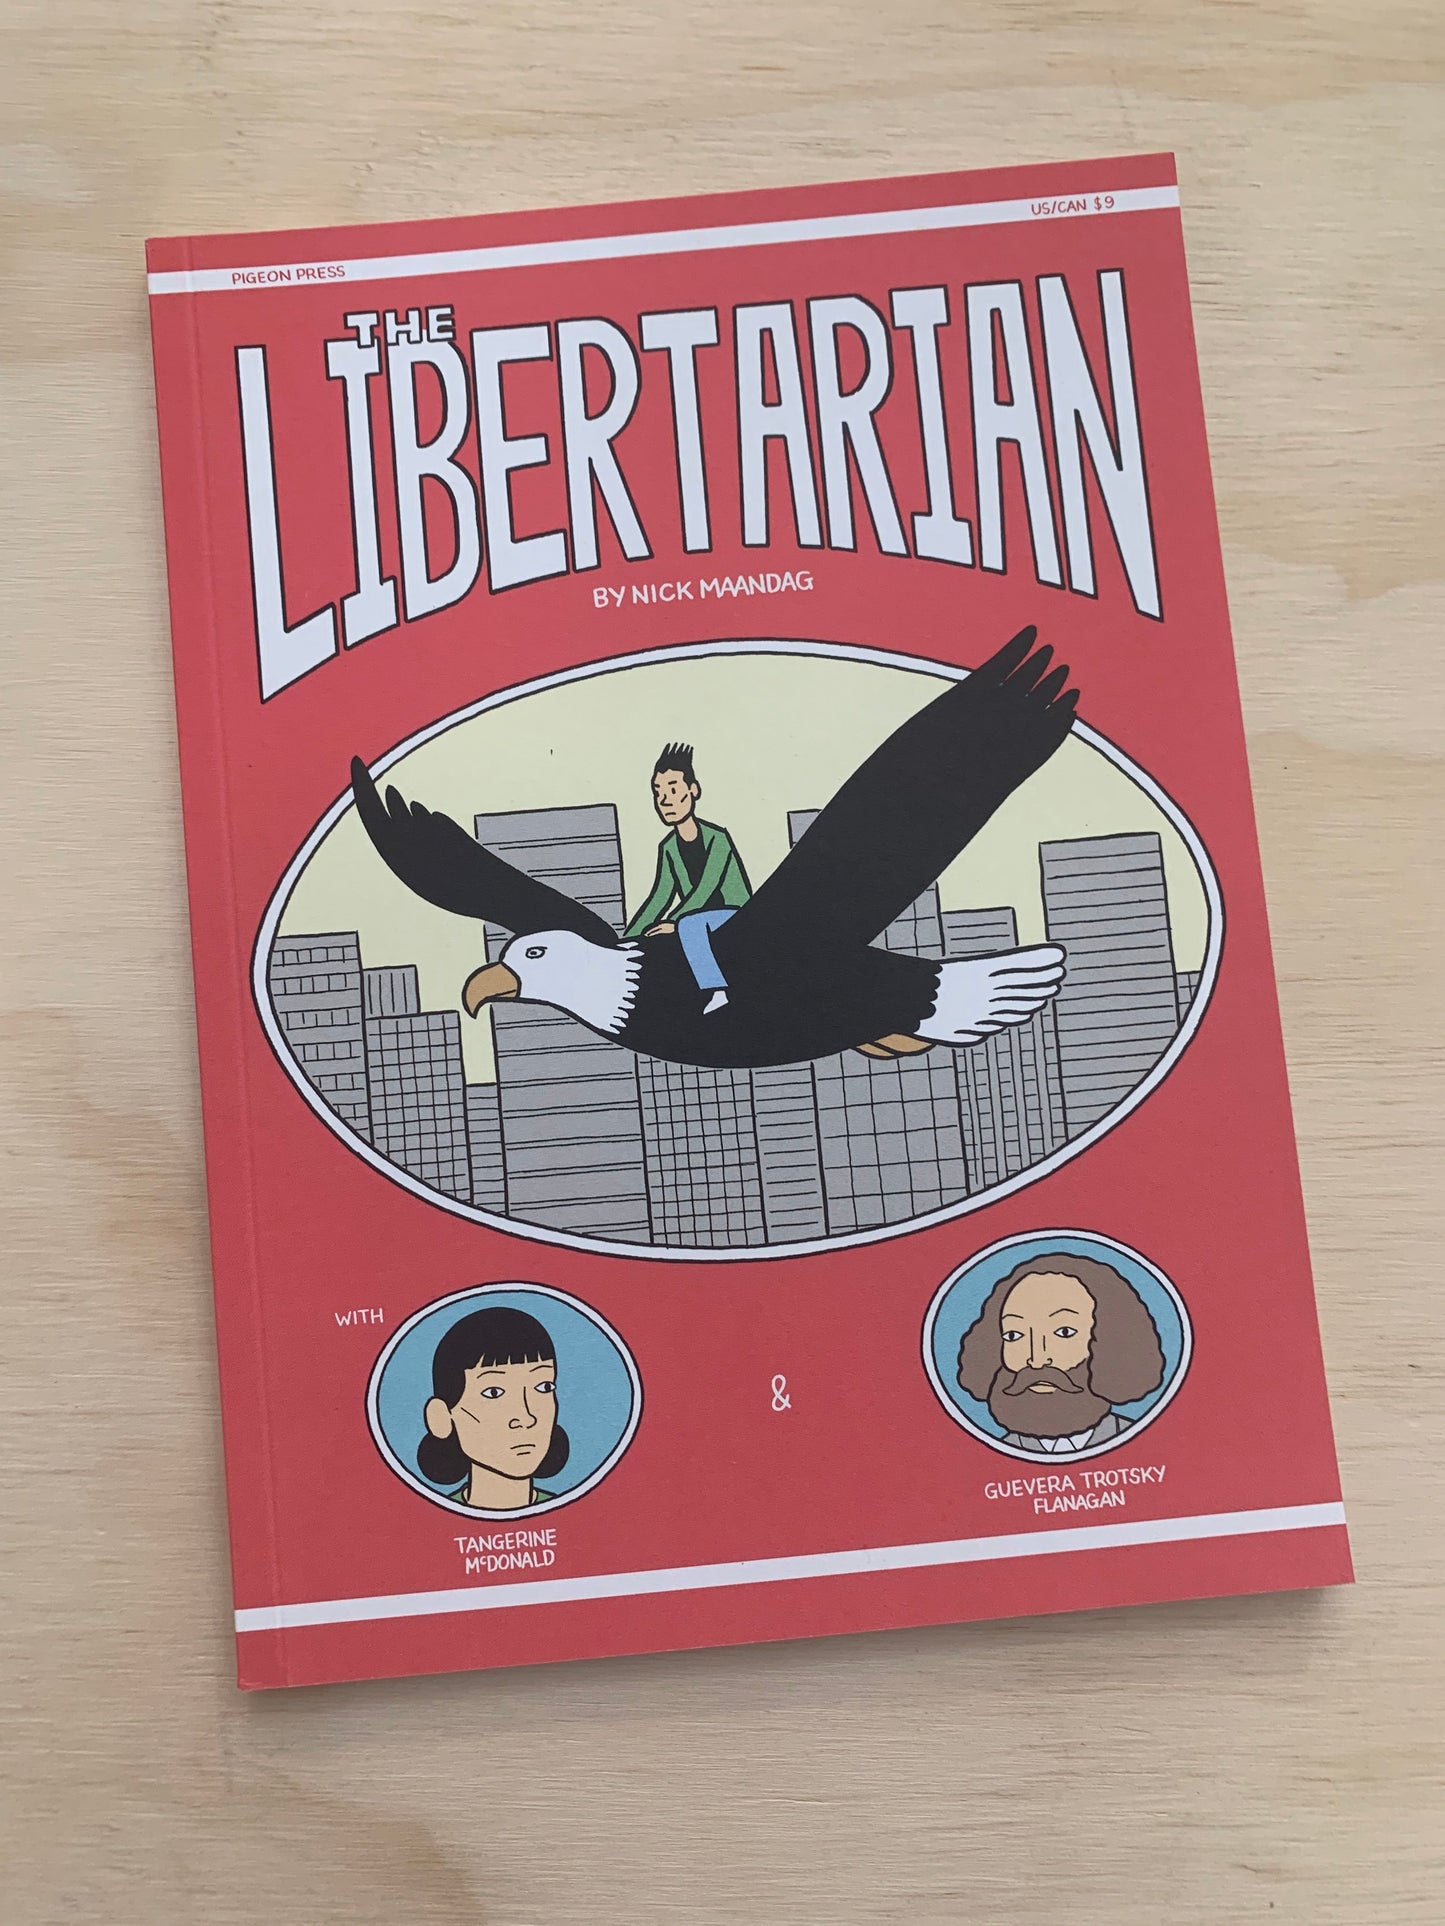 The Libertarian